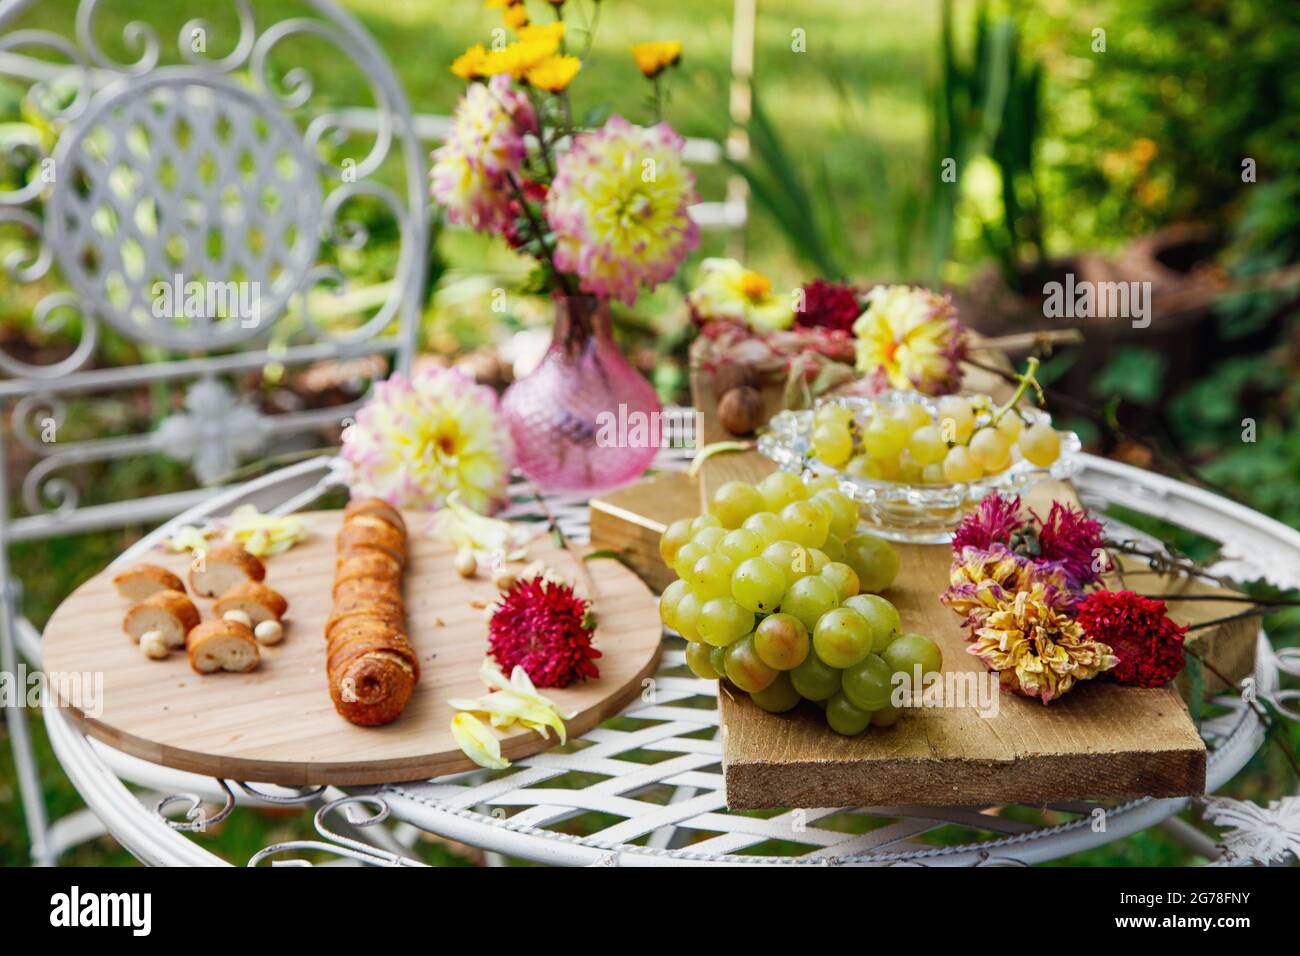 Gartentisch, Brot, Trauben, Blumen, Stillleben, Romantisch, charmant, Food Styling, französisch, mediterran Stockfoto